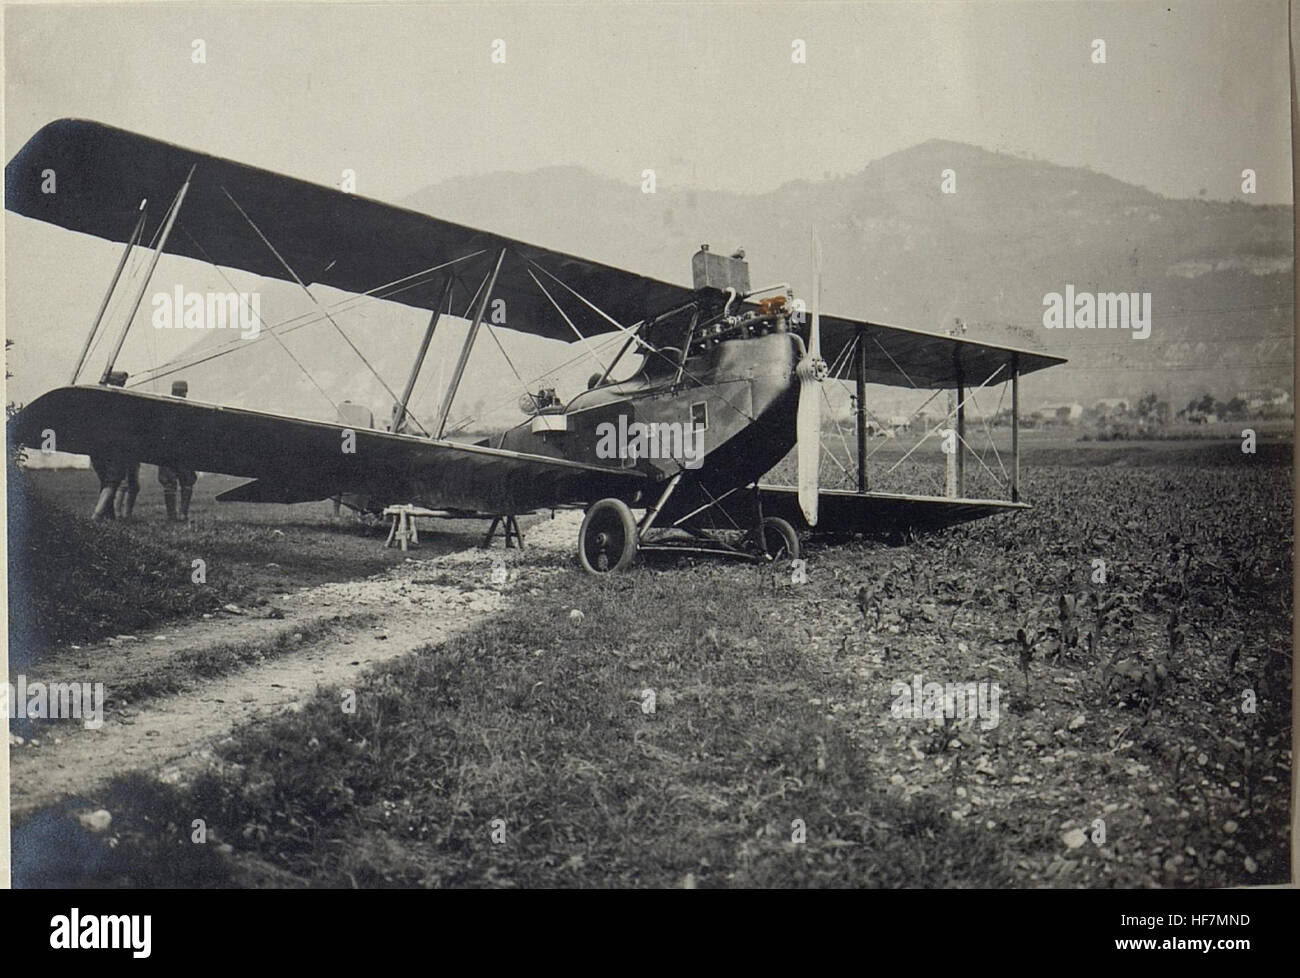 Cellerada, abgestürtztes österreichisches Flugzeug. 15669680) Stock Photo